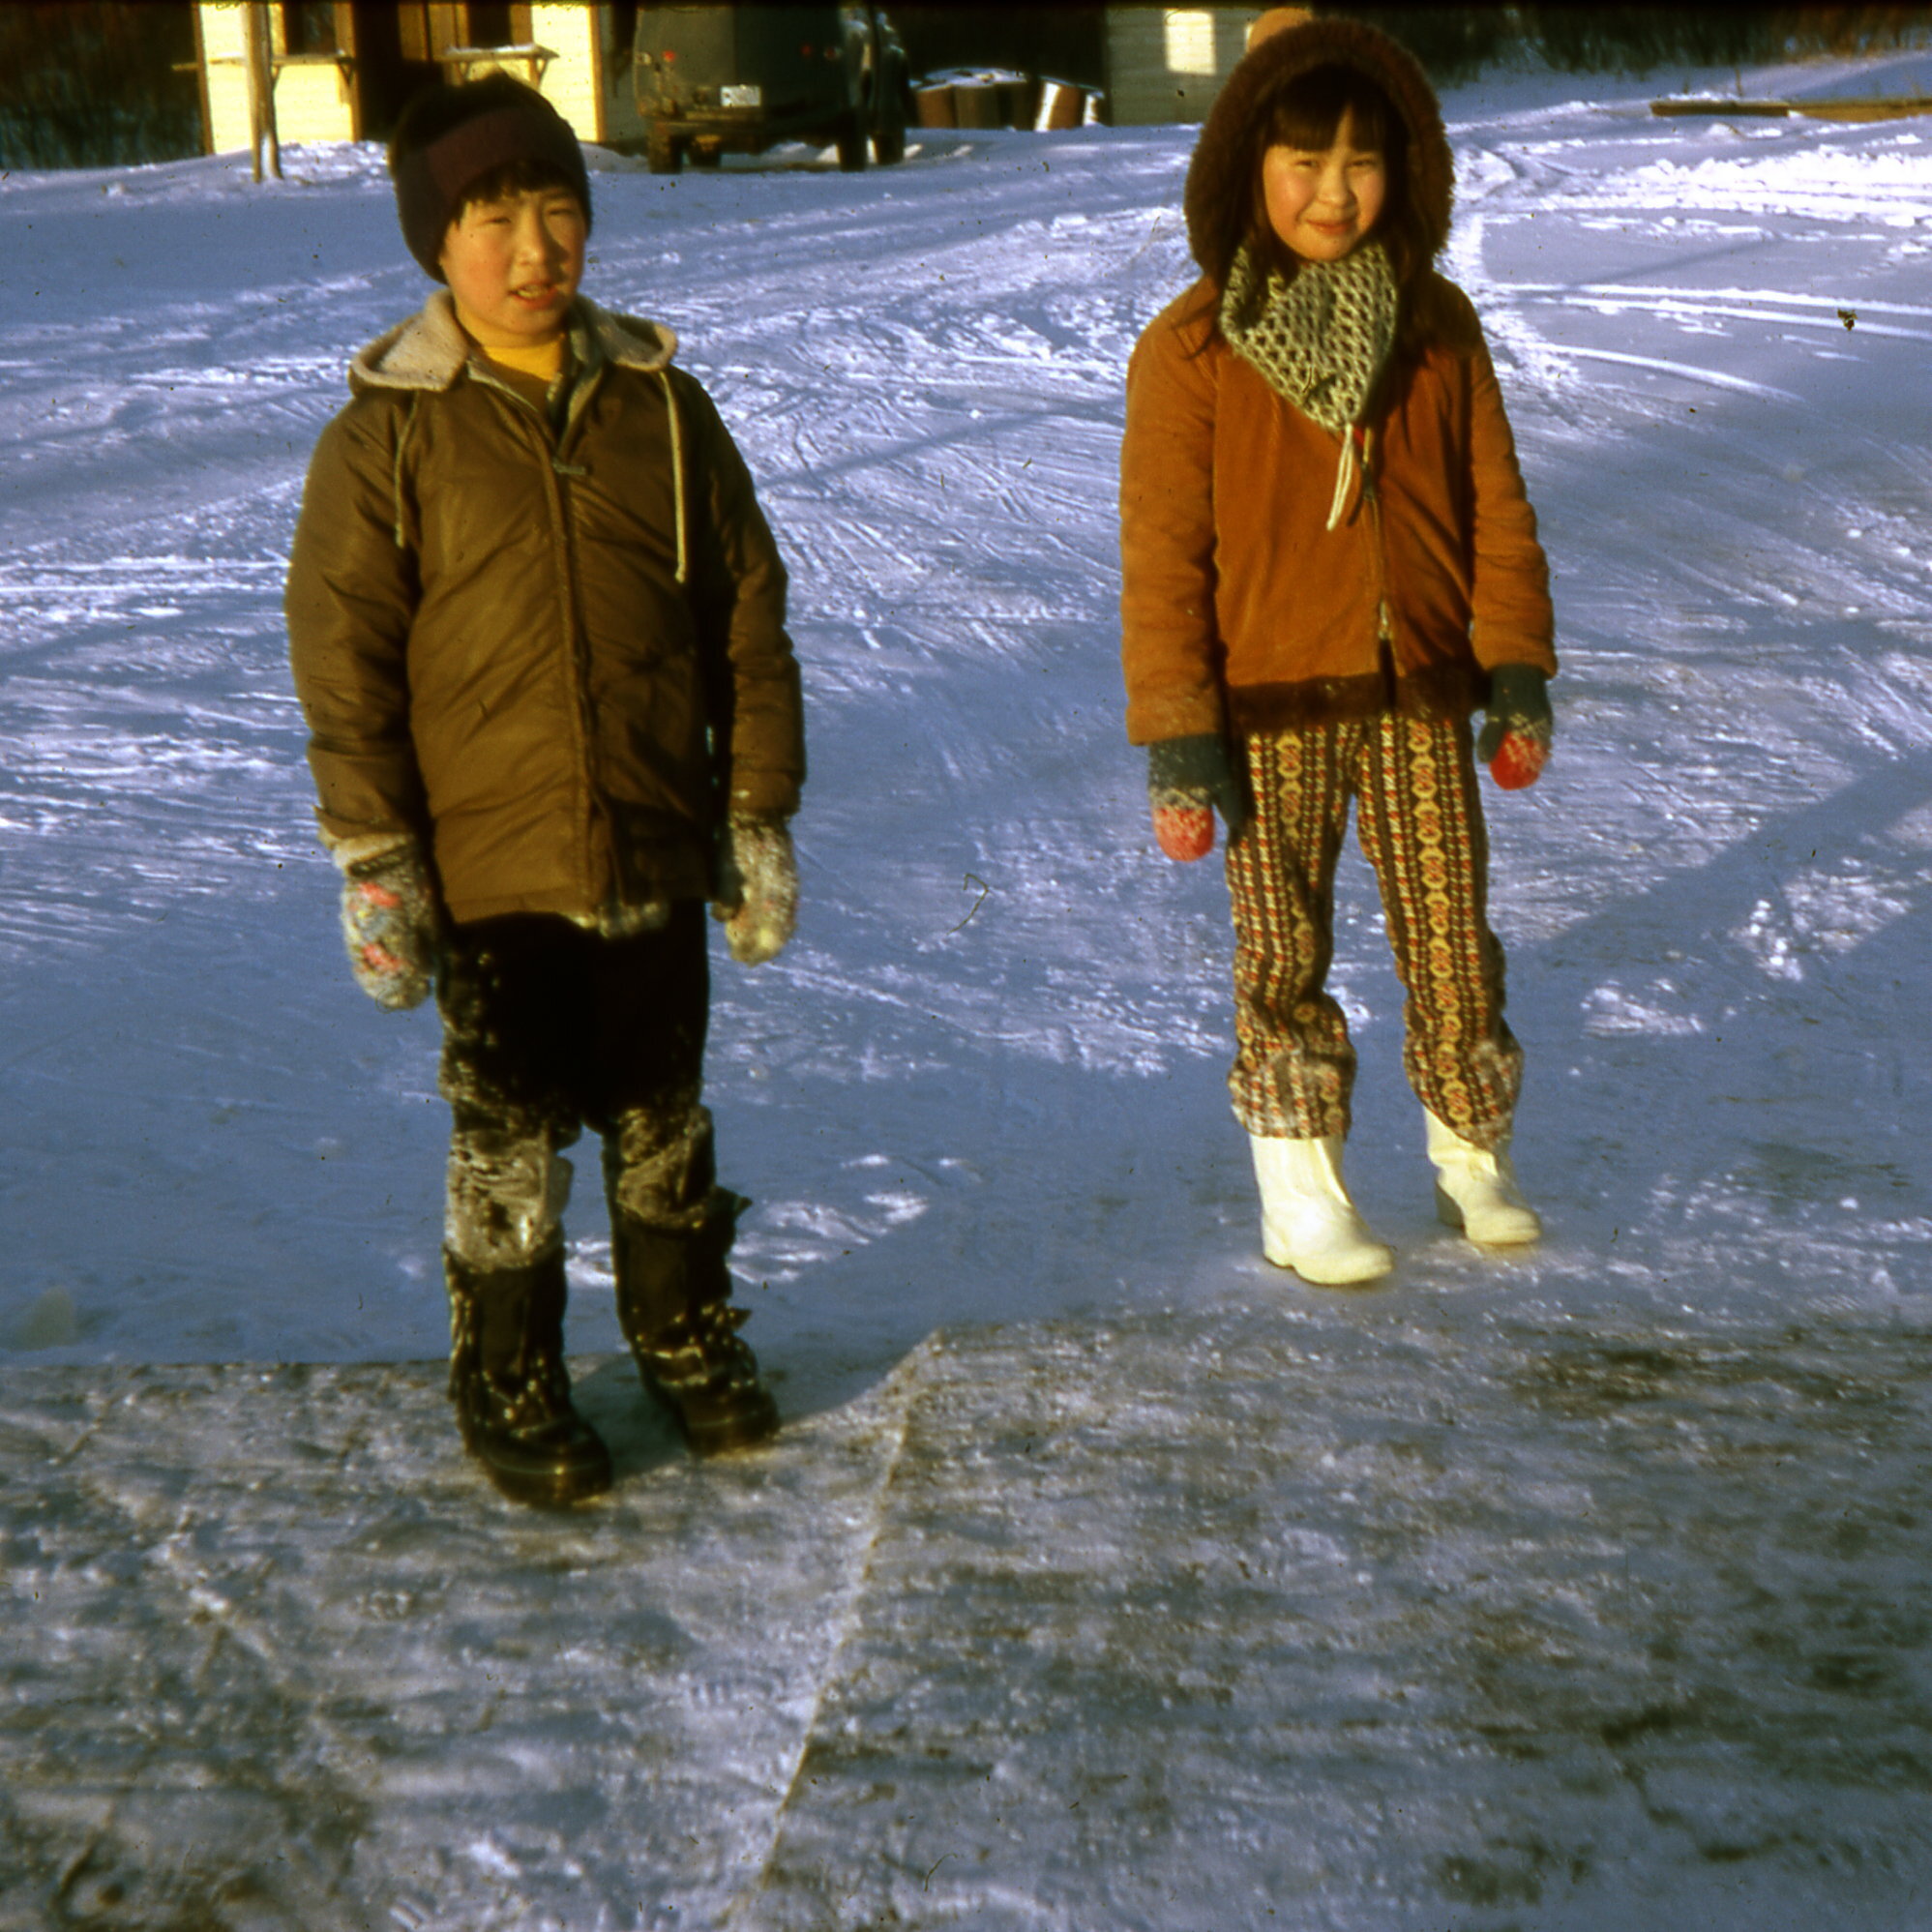 1973 Children by walk.jpg